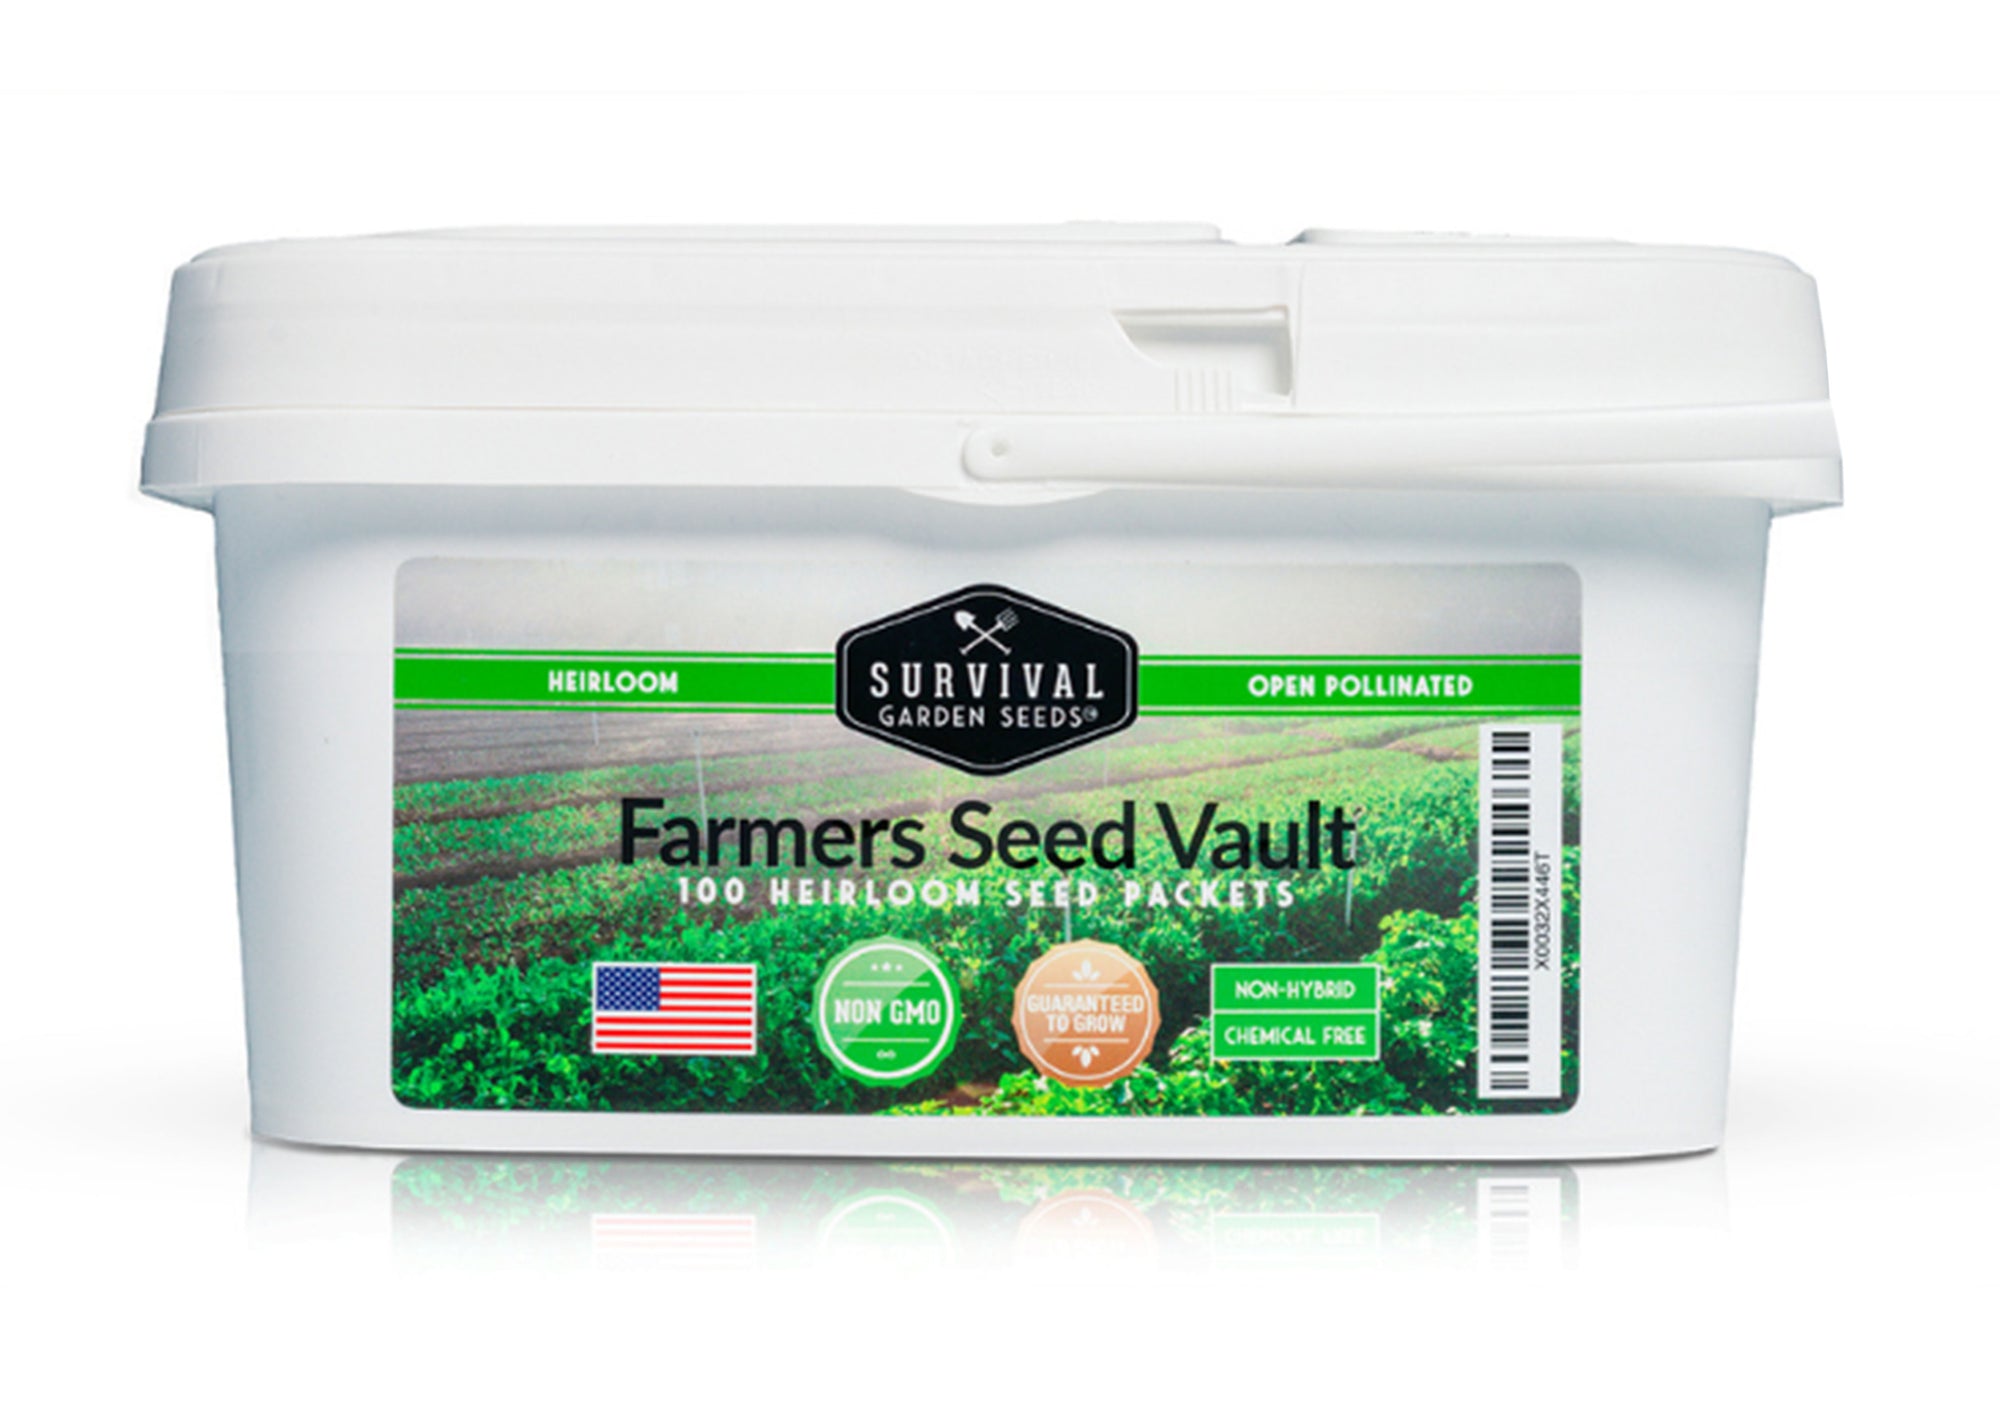 Farmers Seed Vault - 100 packs of heirloom garden seeds